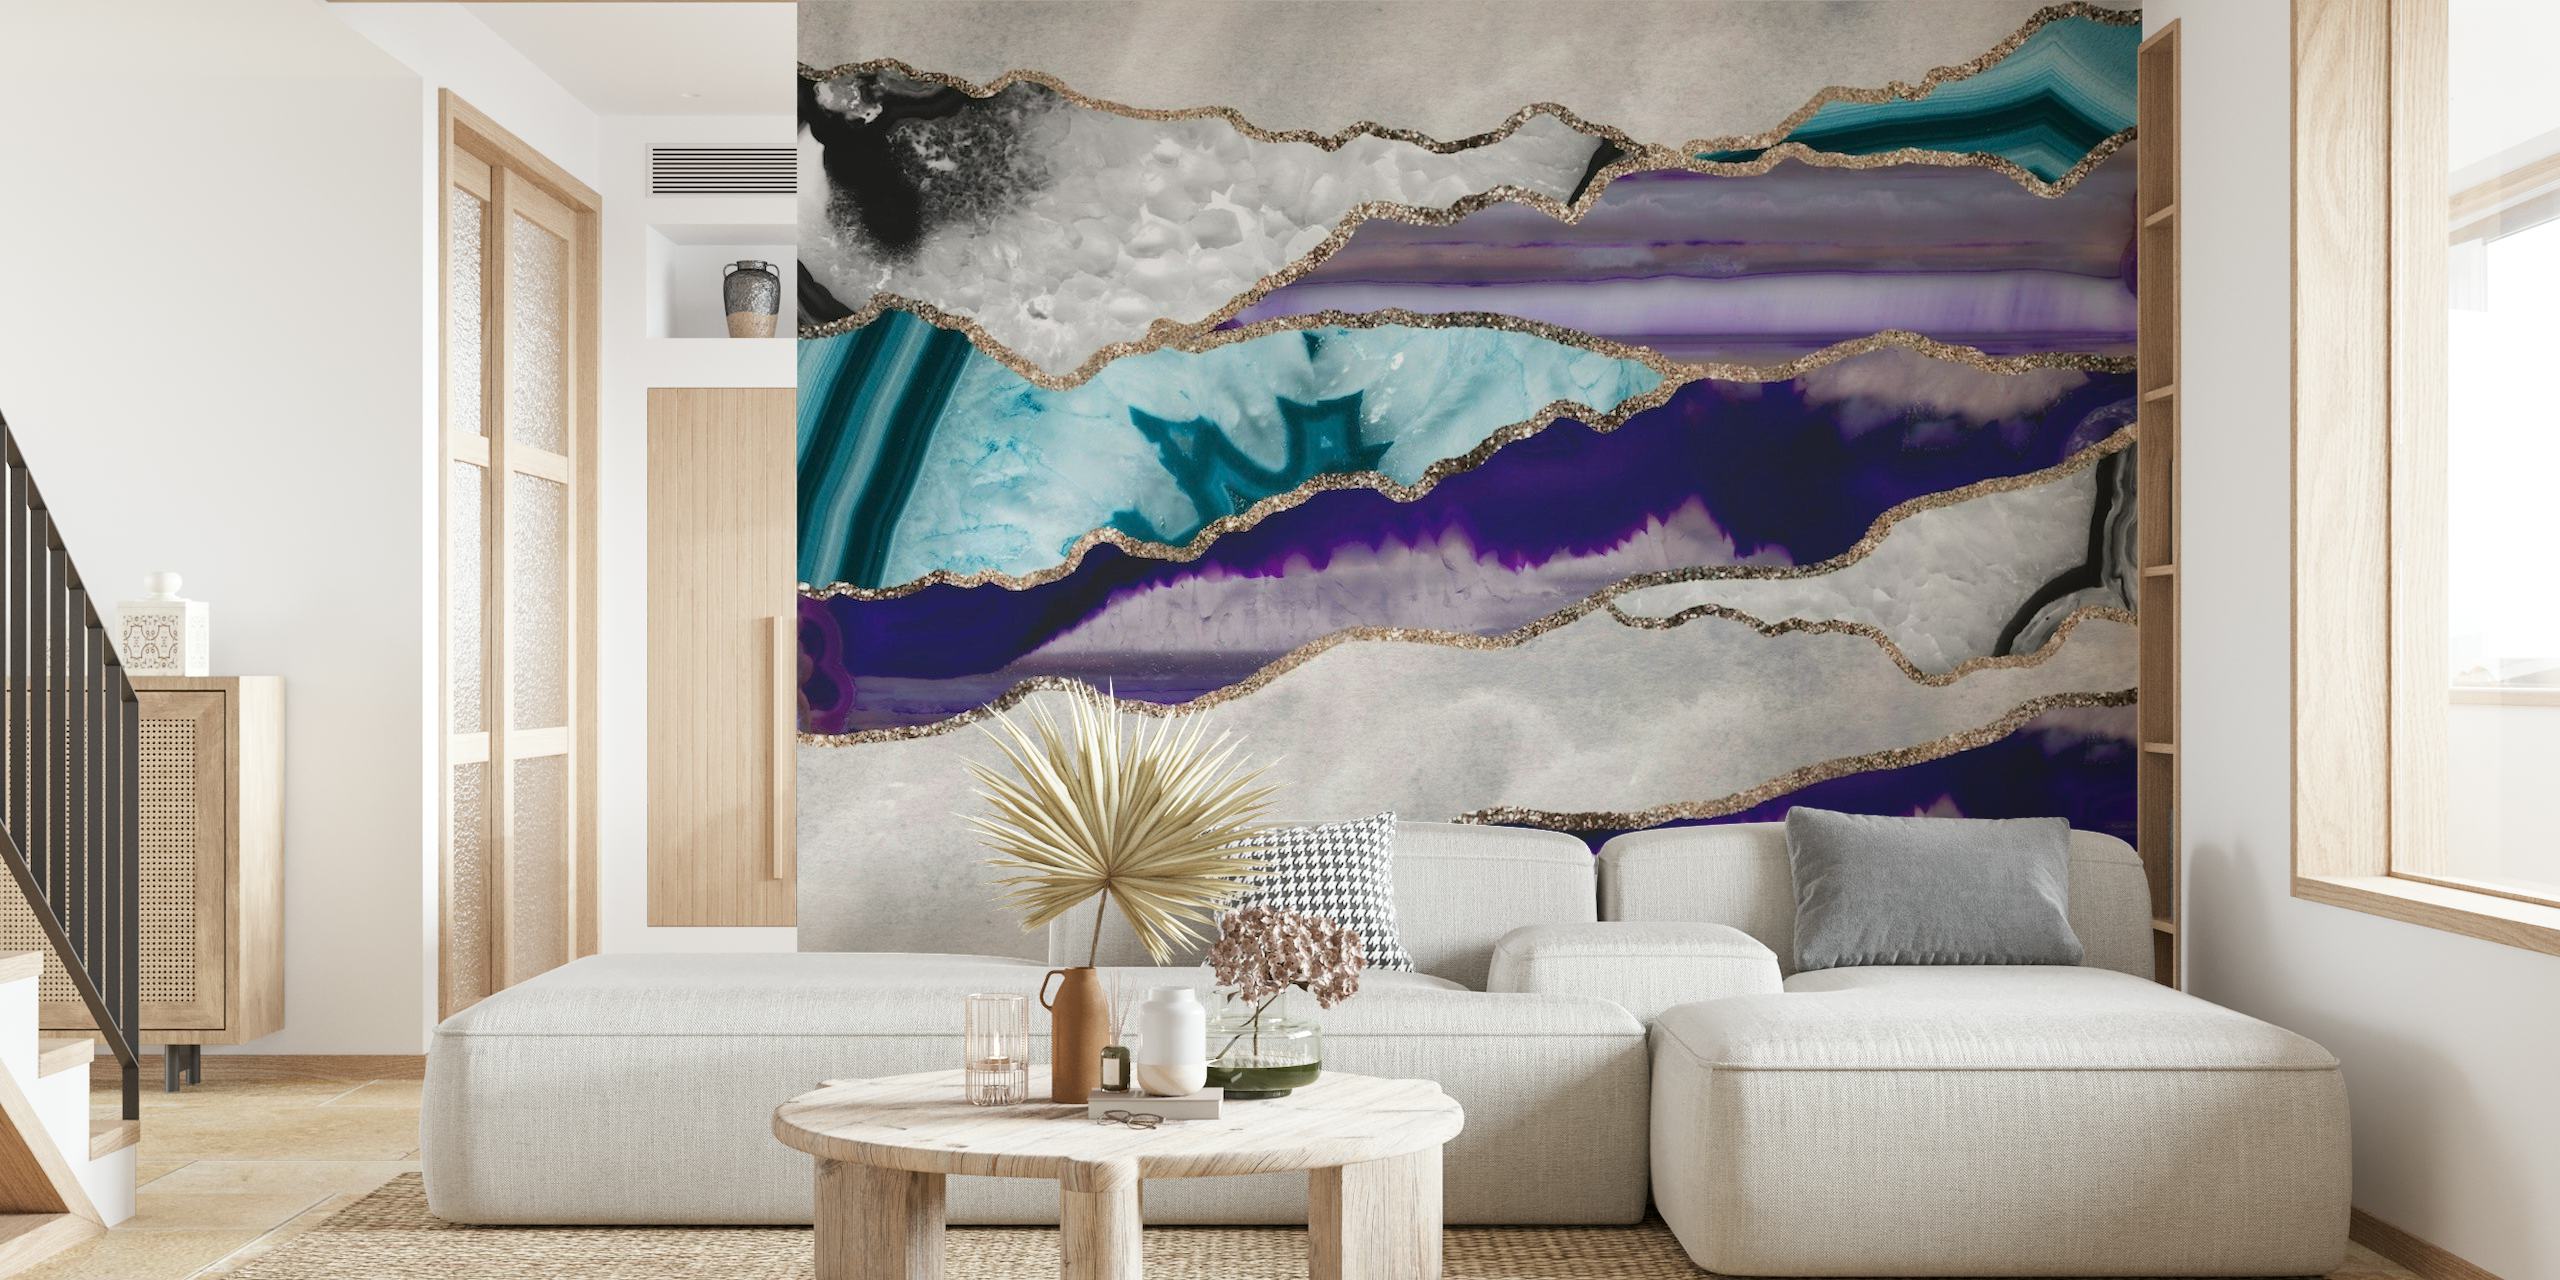 Une fresque murale au style luxueux avec des motifs d'agate bleue et violette et des accents de paillettes dorées